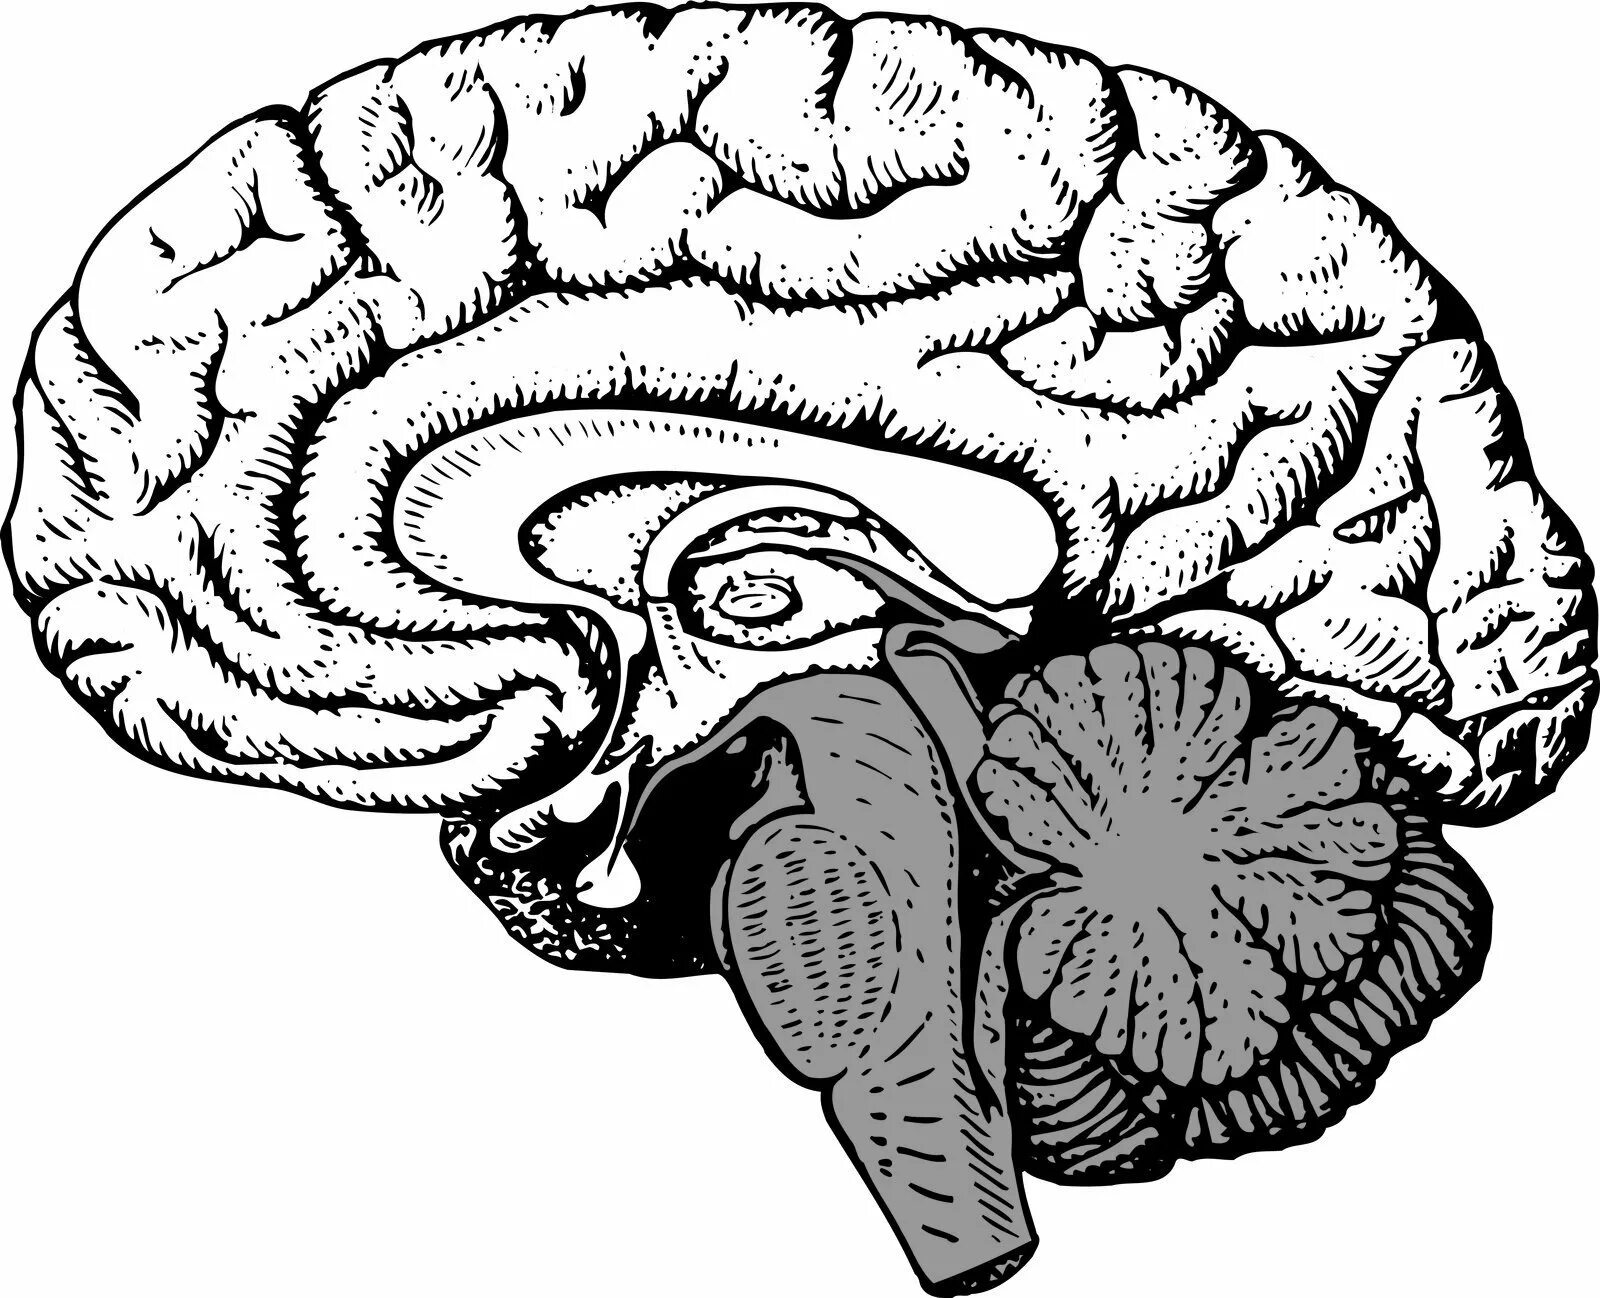 Мозг без подписей. Сагиттальный разрез головного мозга человека. Сагиттальный разрез мозга анатомия. Сагиттальный разрез головного мозга человека рисунок. Сагиттальный срез головного мозга анатомия.